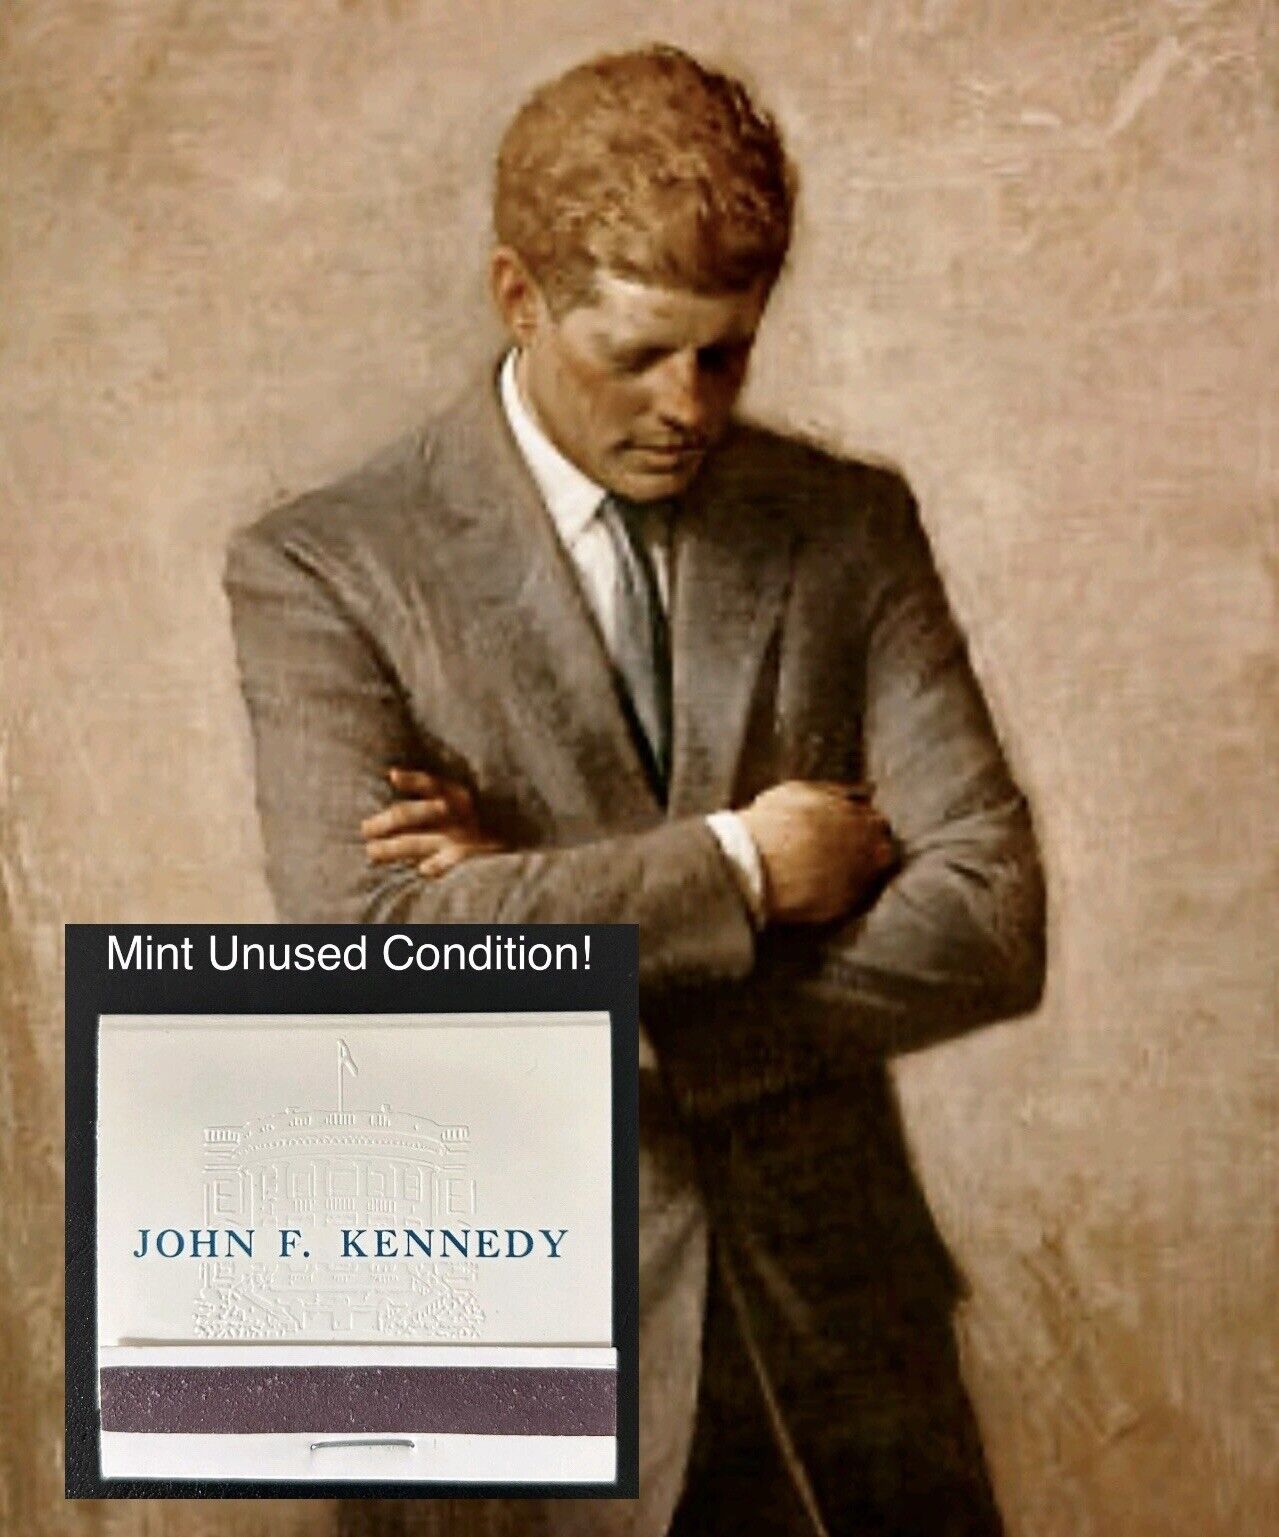 RARE 60’s President John F. Kennedy Official Embossed White House Matchbook